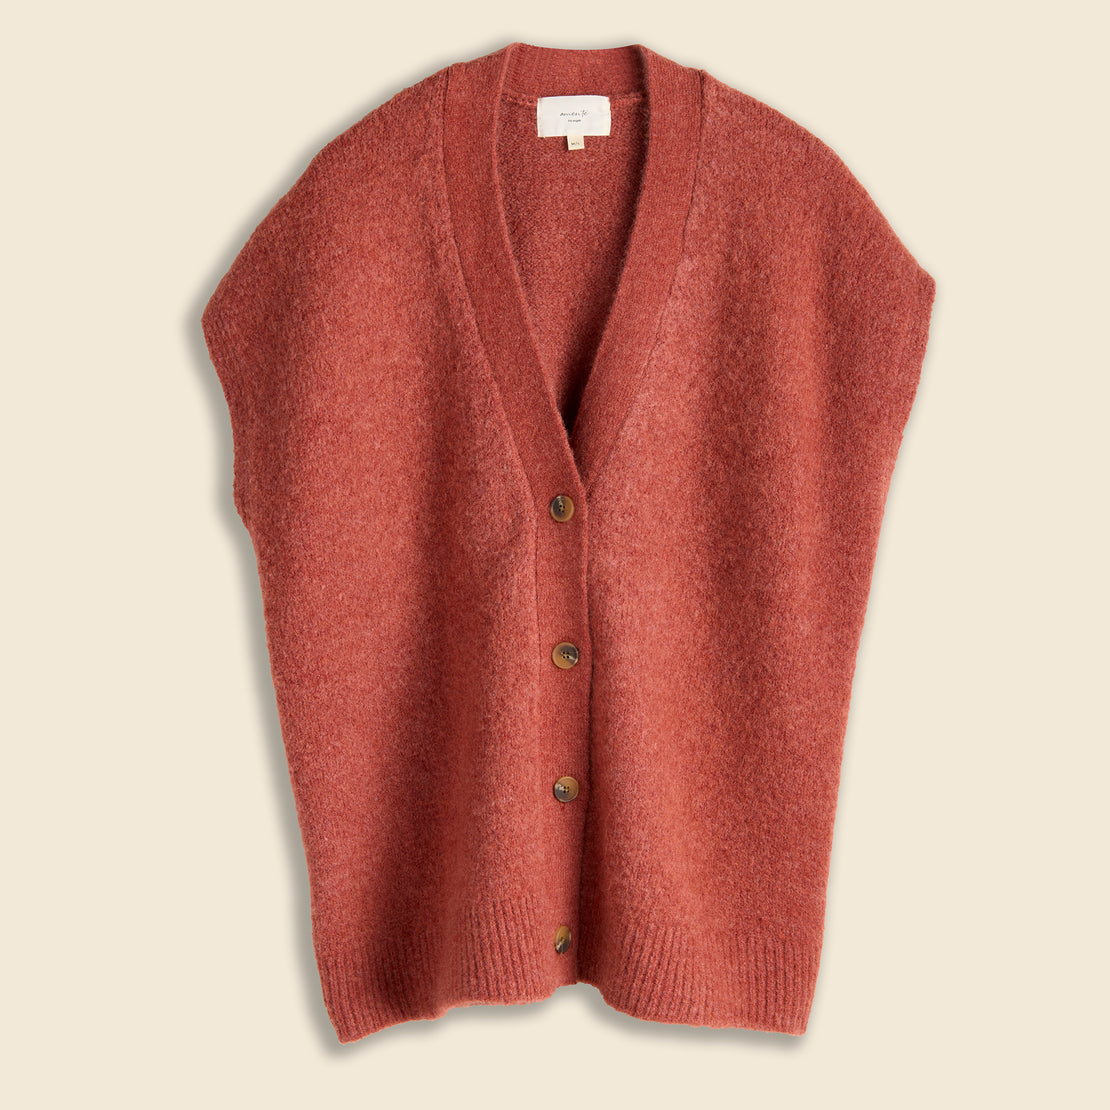 Amente Alpaca Sweater Vest - Brick